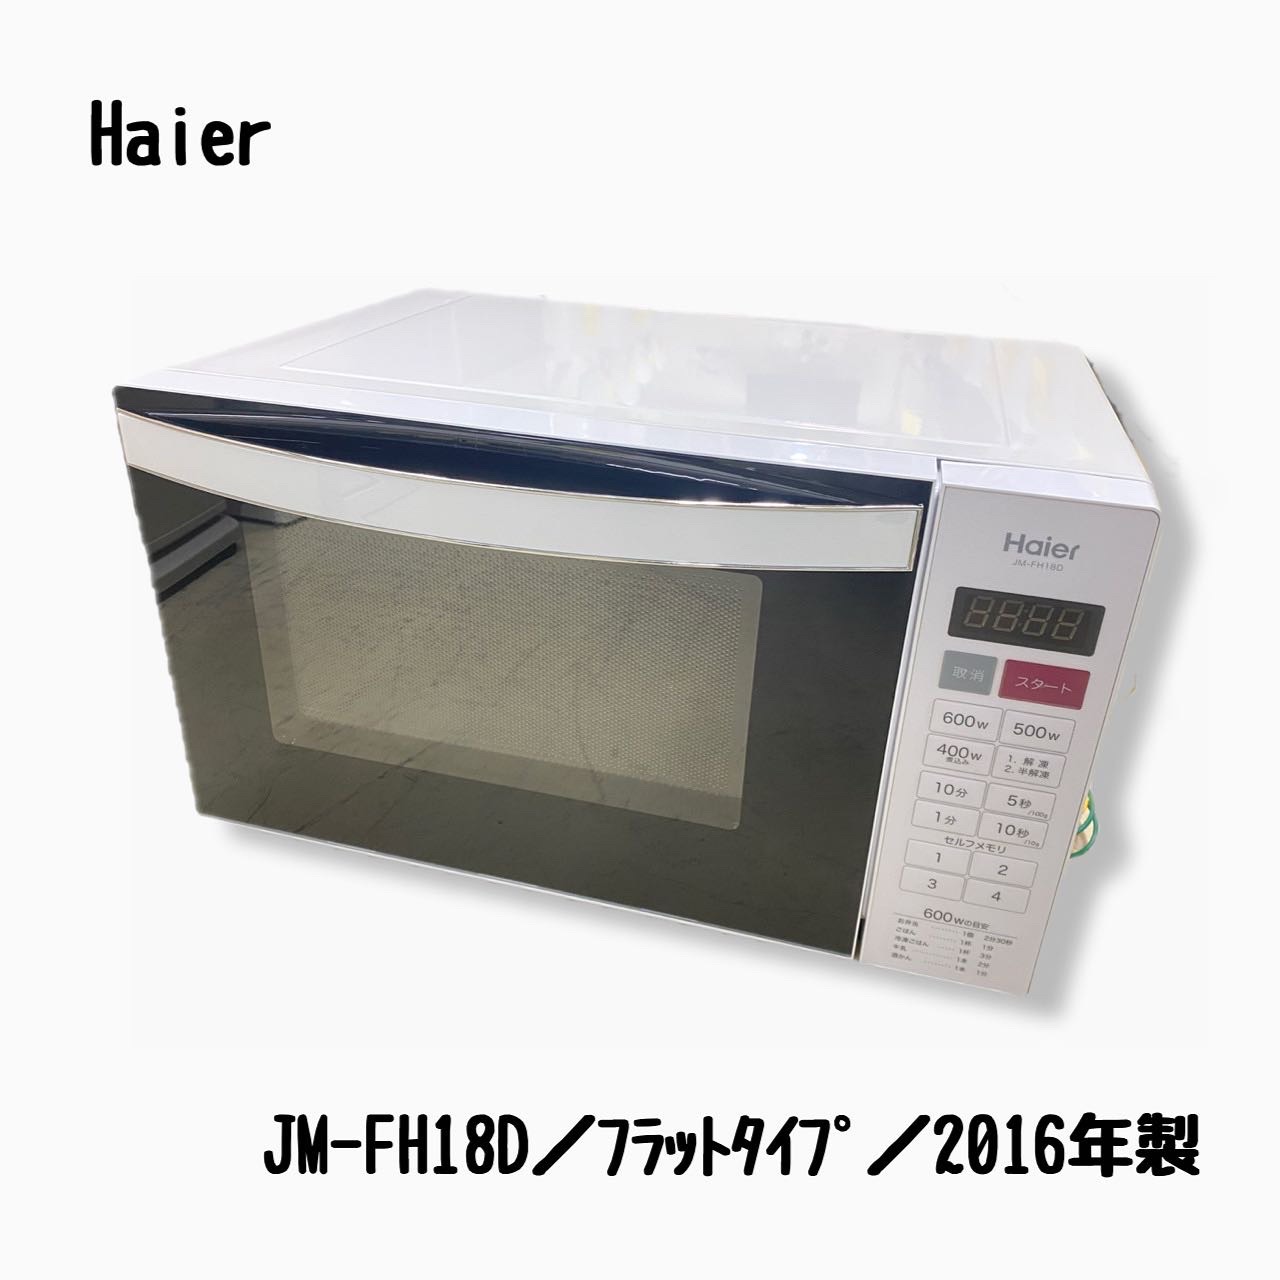 JM-FH18D - 電子レンジ/オーブン